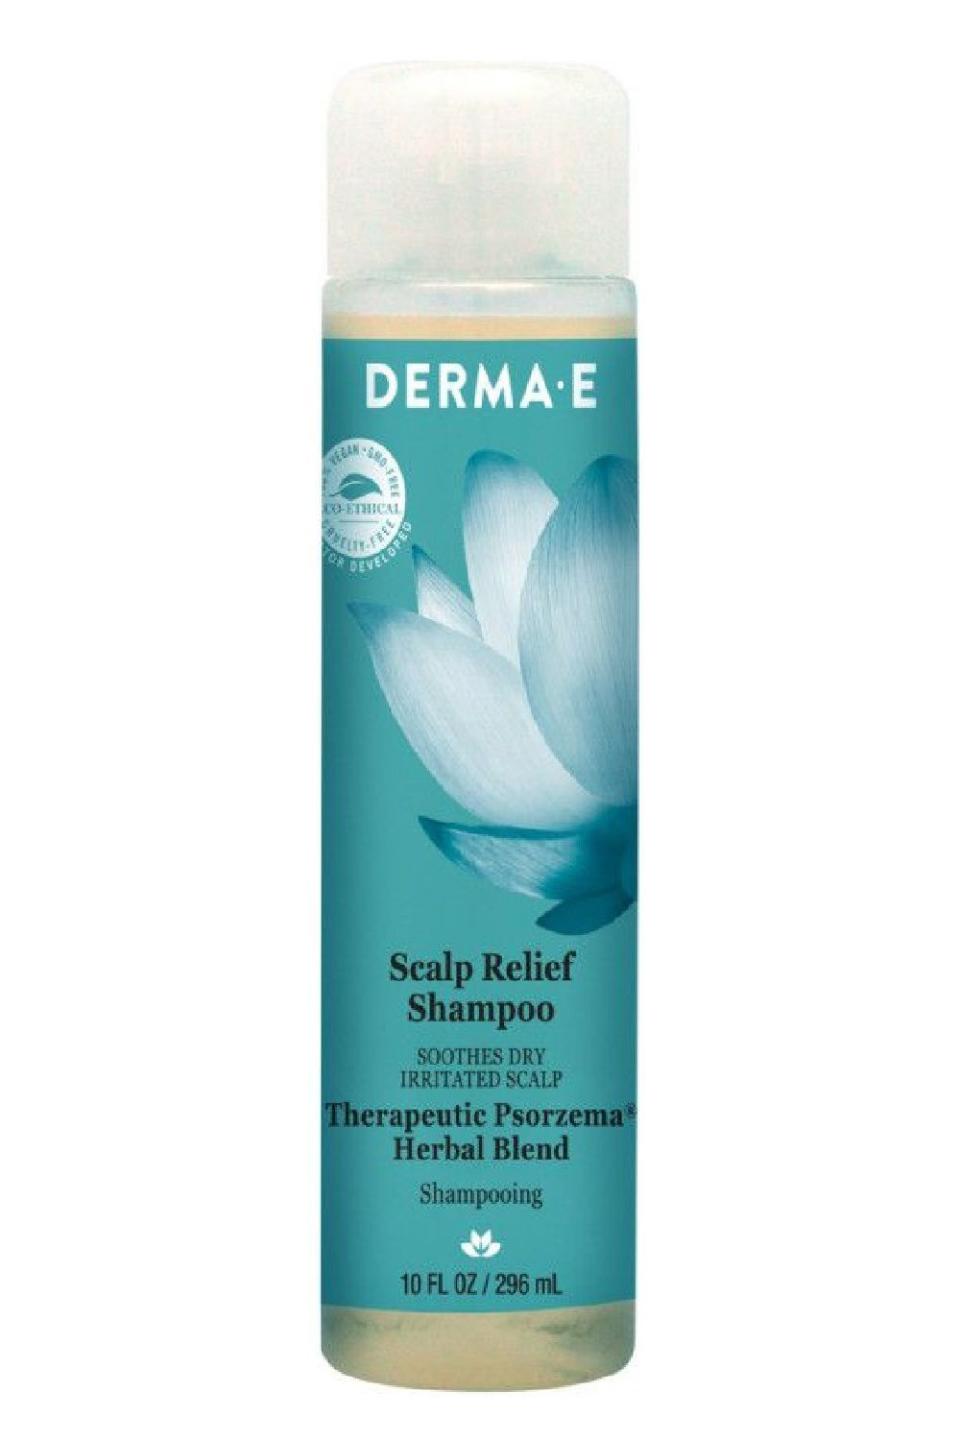 8) Derma E Scalp Relief Shampoo